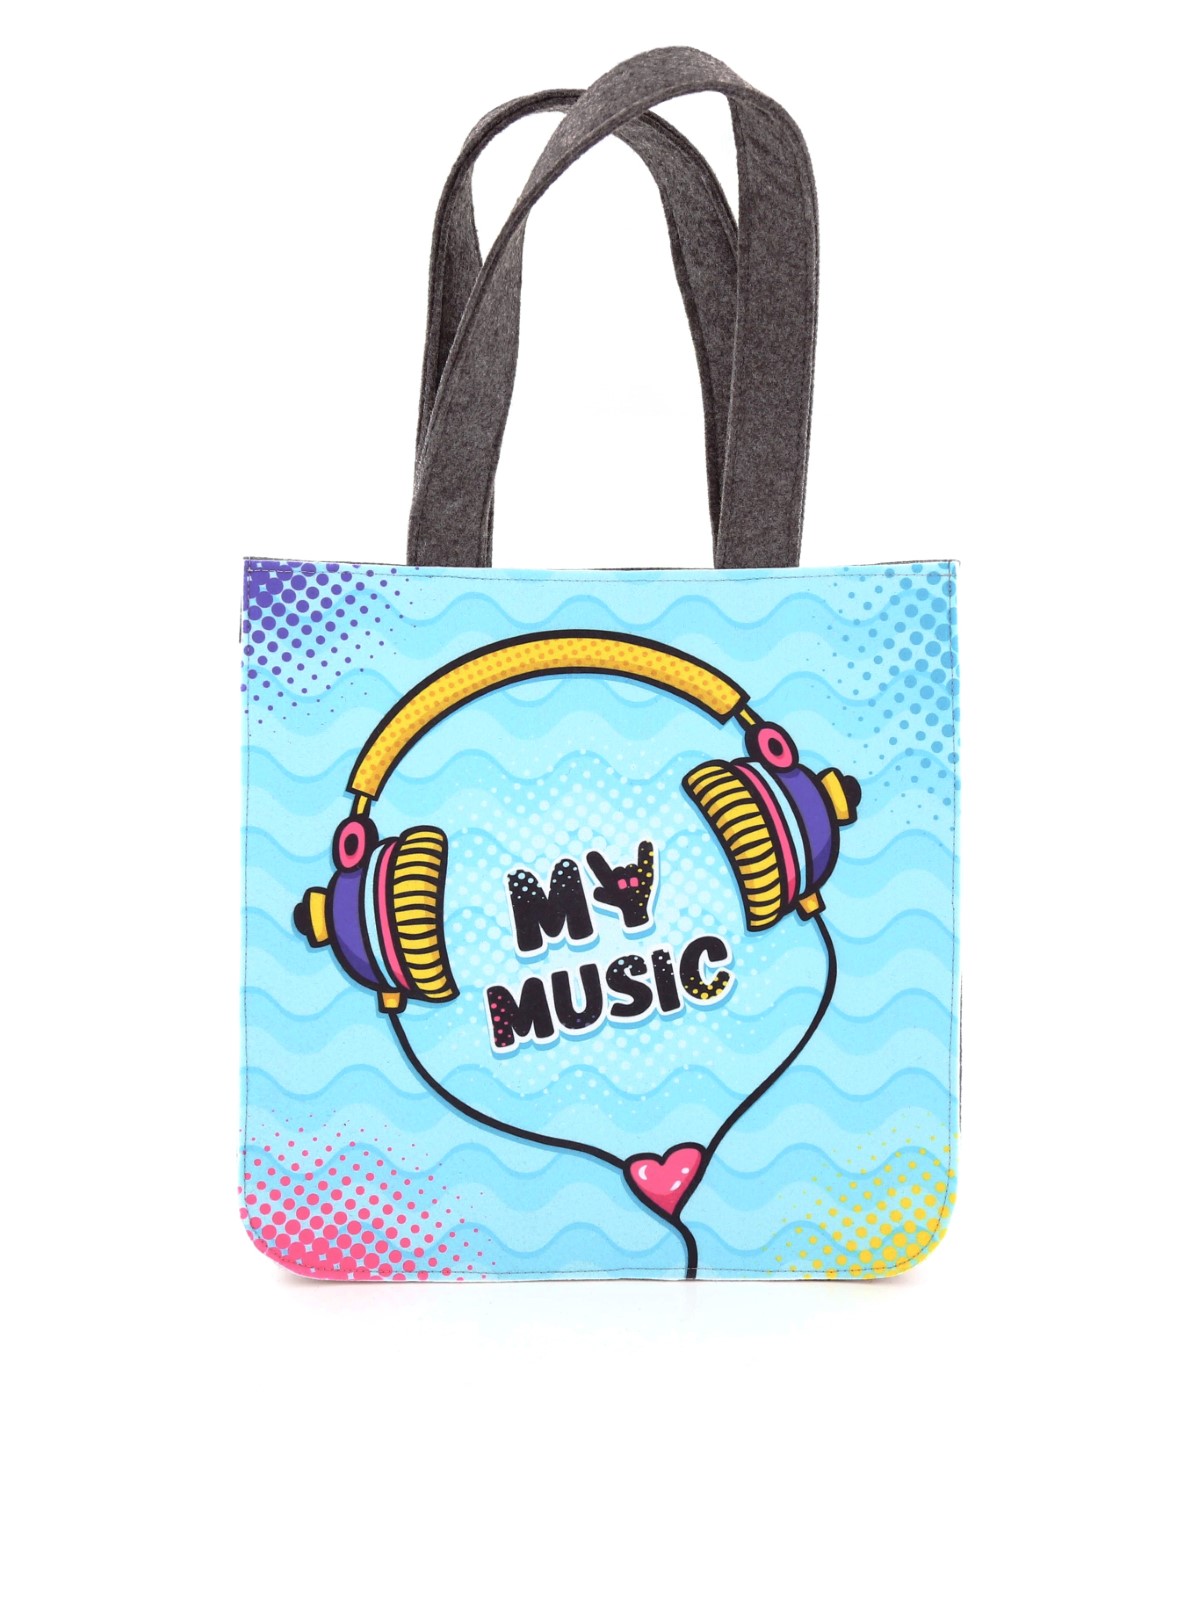 Sokoon Music Collection Boy Bag